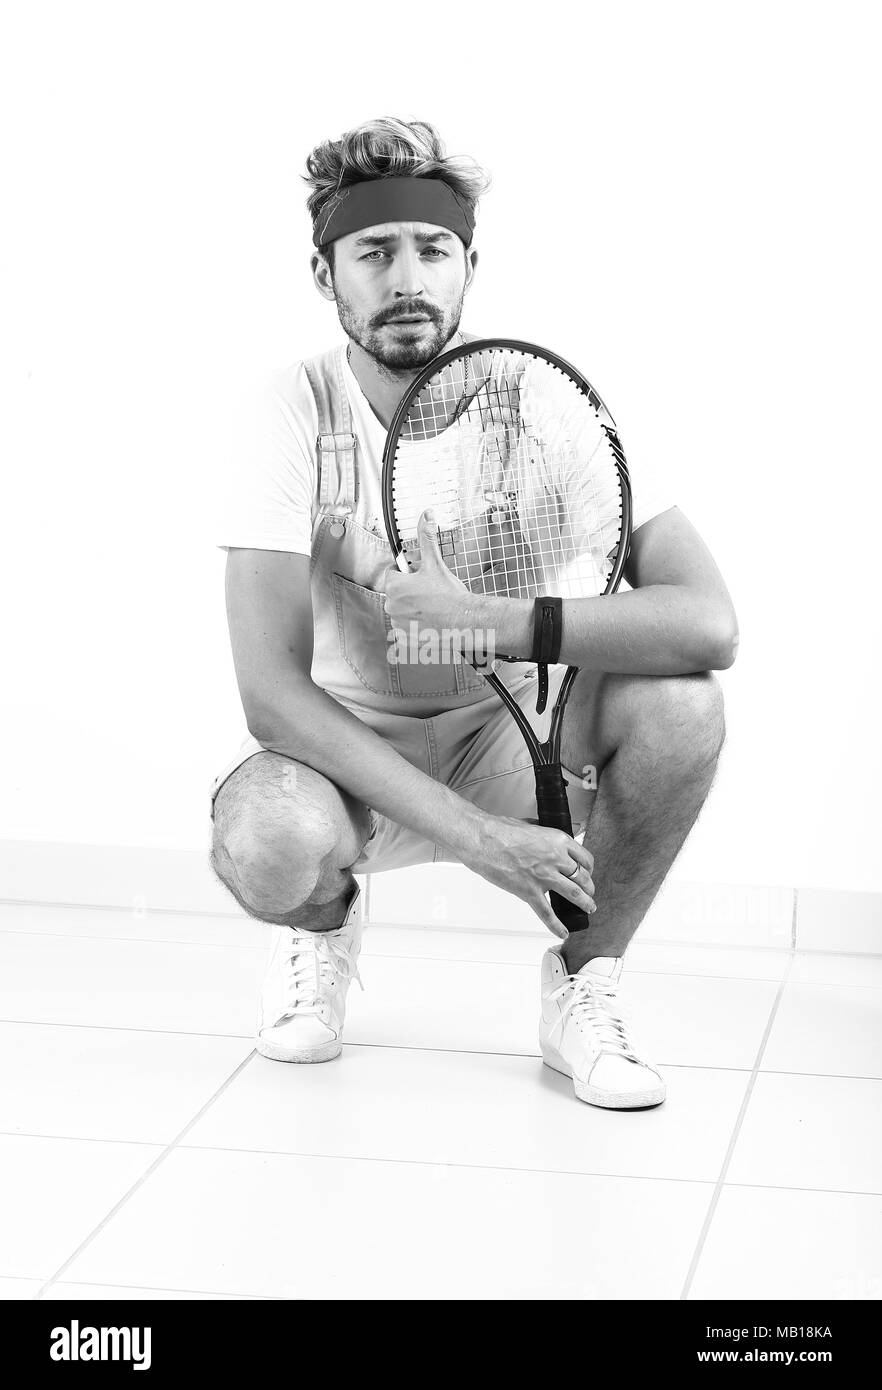 Un joueur de tennis se joue sur un fond blanc. Banque D'Images